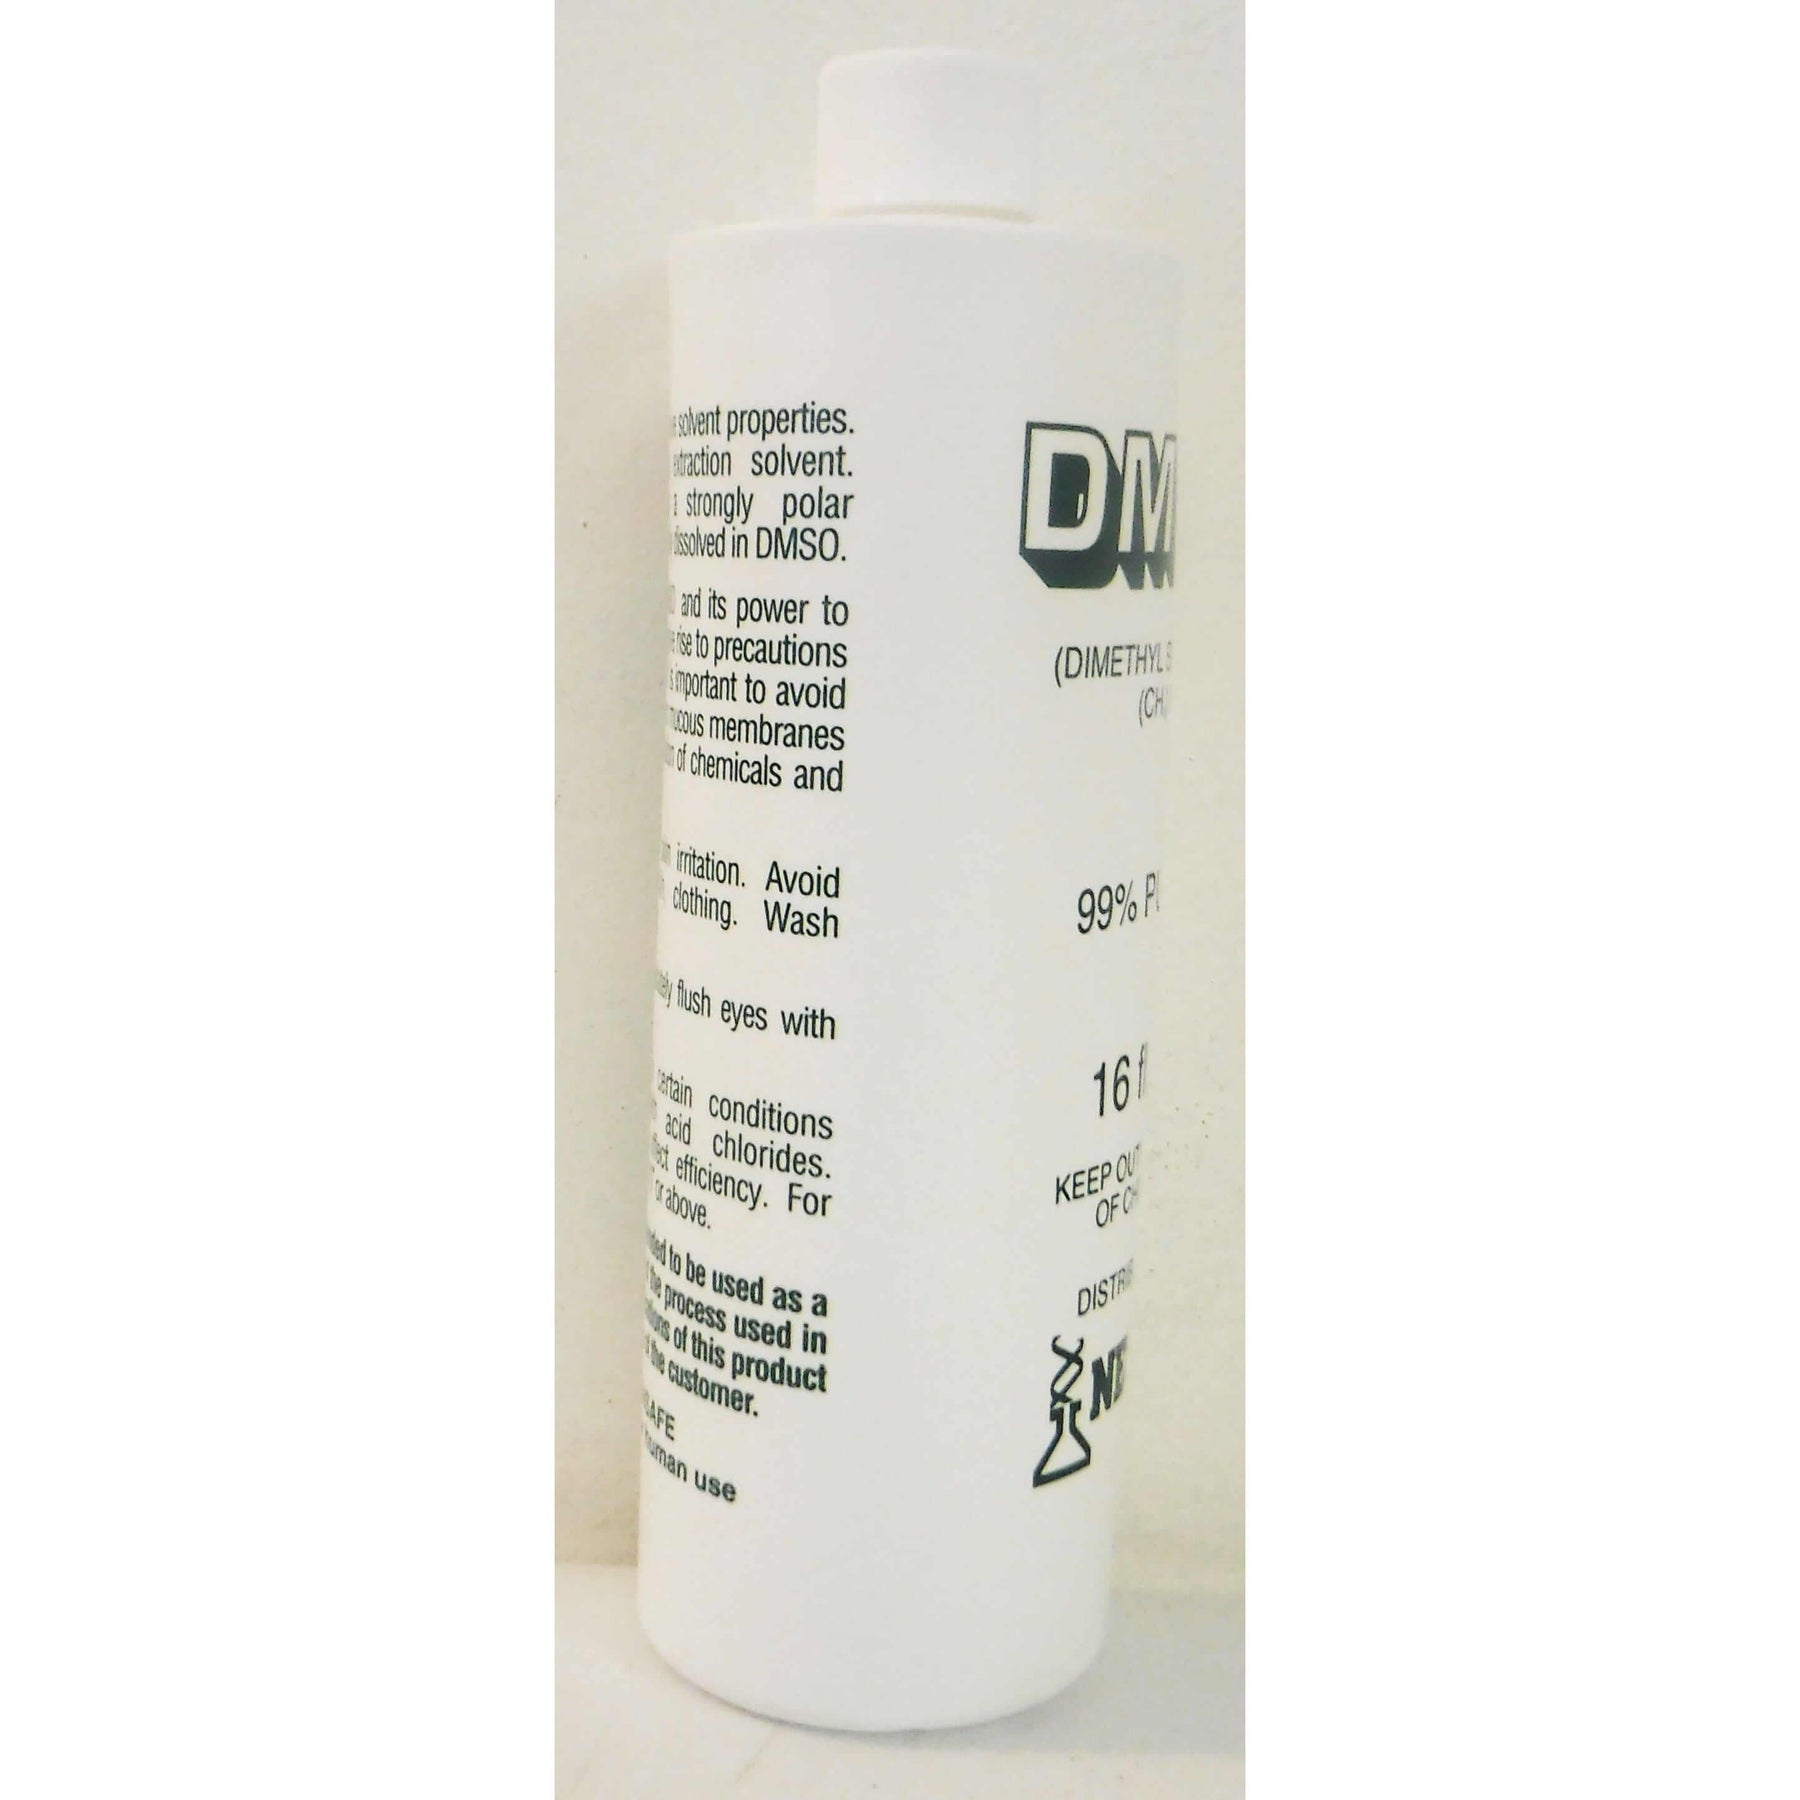 DMSO Dimethyl Sulfoxide 99% Purity 16 oz